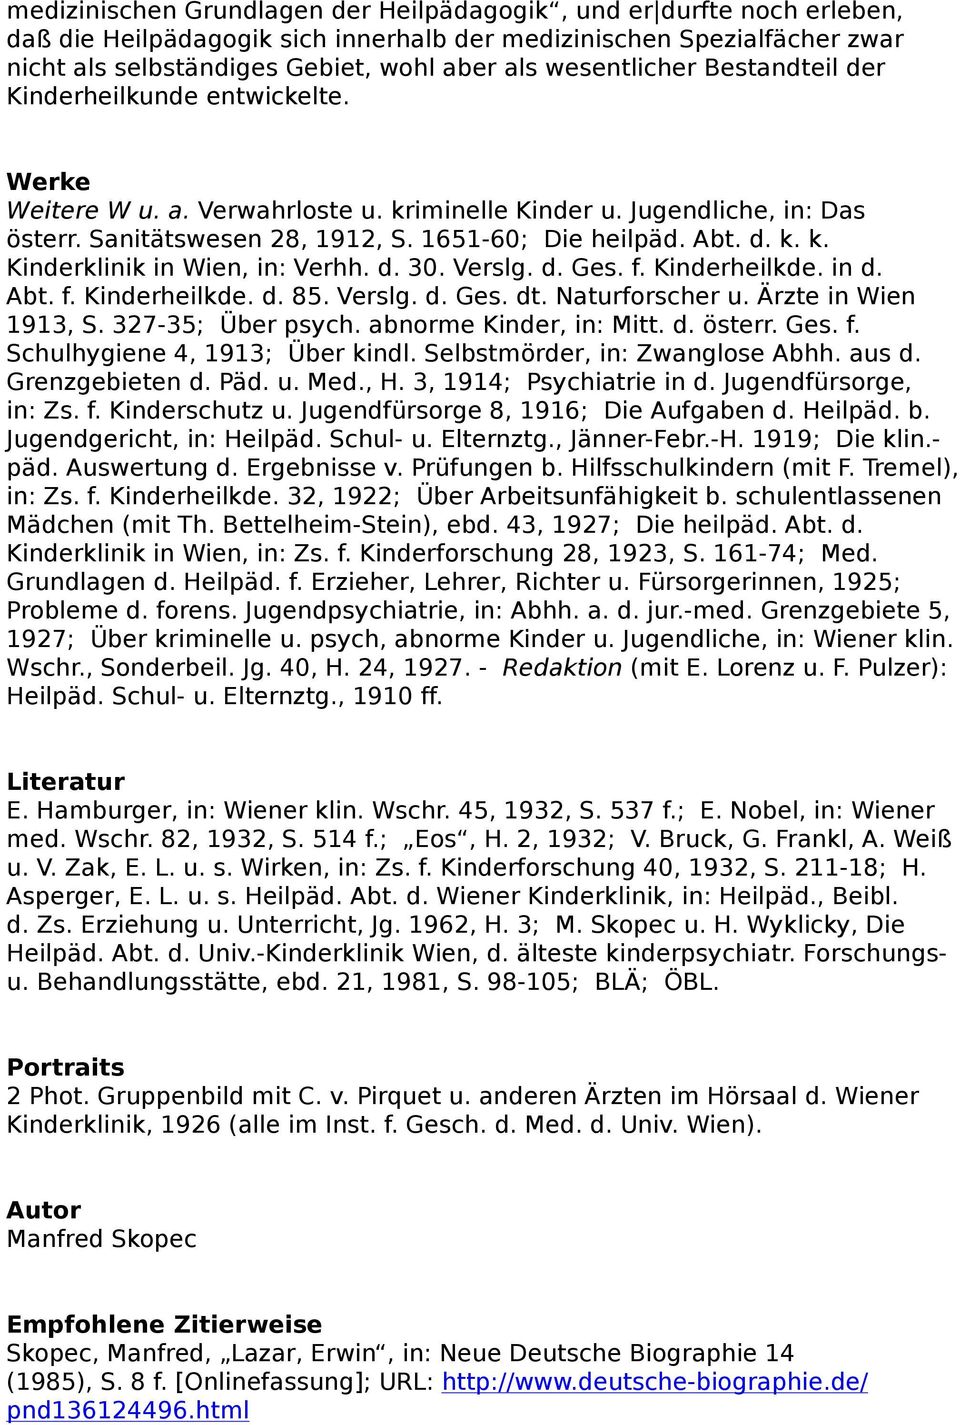 d. k. k. Kinderklinik in Wien, in: Verhh. d. 30. Verslg. d. Ges. f. Kinderheilkde. in d. Abt. f. Kinderheilkde. d. 85. Verslg. d. Ges. dt. Naturforscher u. Ärzte in Wien 1913, S. 327-35; Über psych.